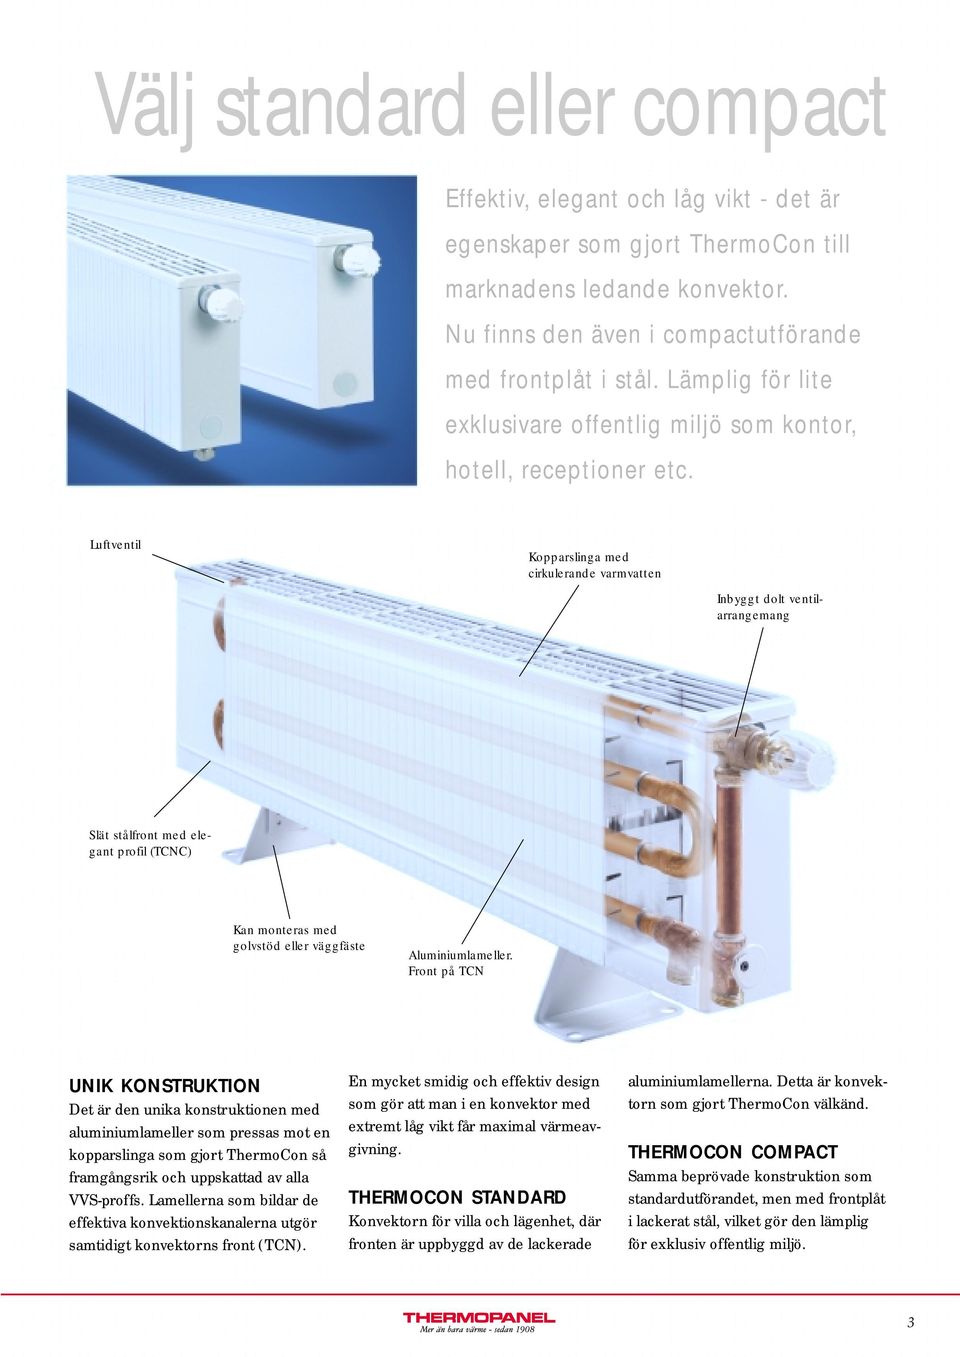 Luftventil Kopparslinga med cirkulerande varmvatten Inbyggt dolt ventilarrangemang Slät stålfront med elegant profil (TCNC) Kan monteras med golvstöd eller väggfäste Aluminiumlameller.